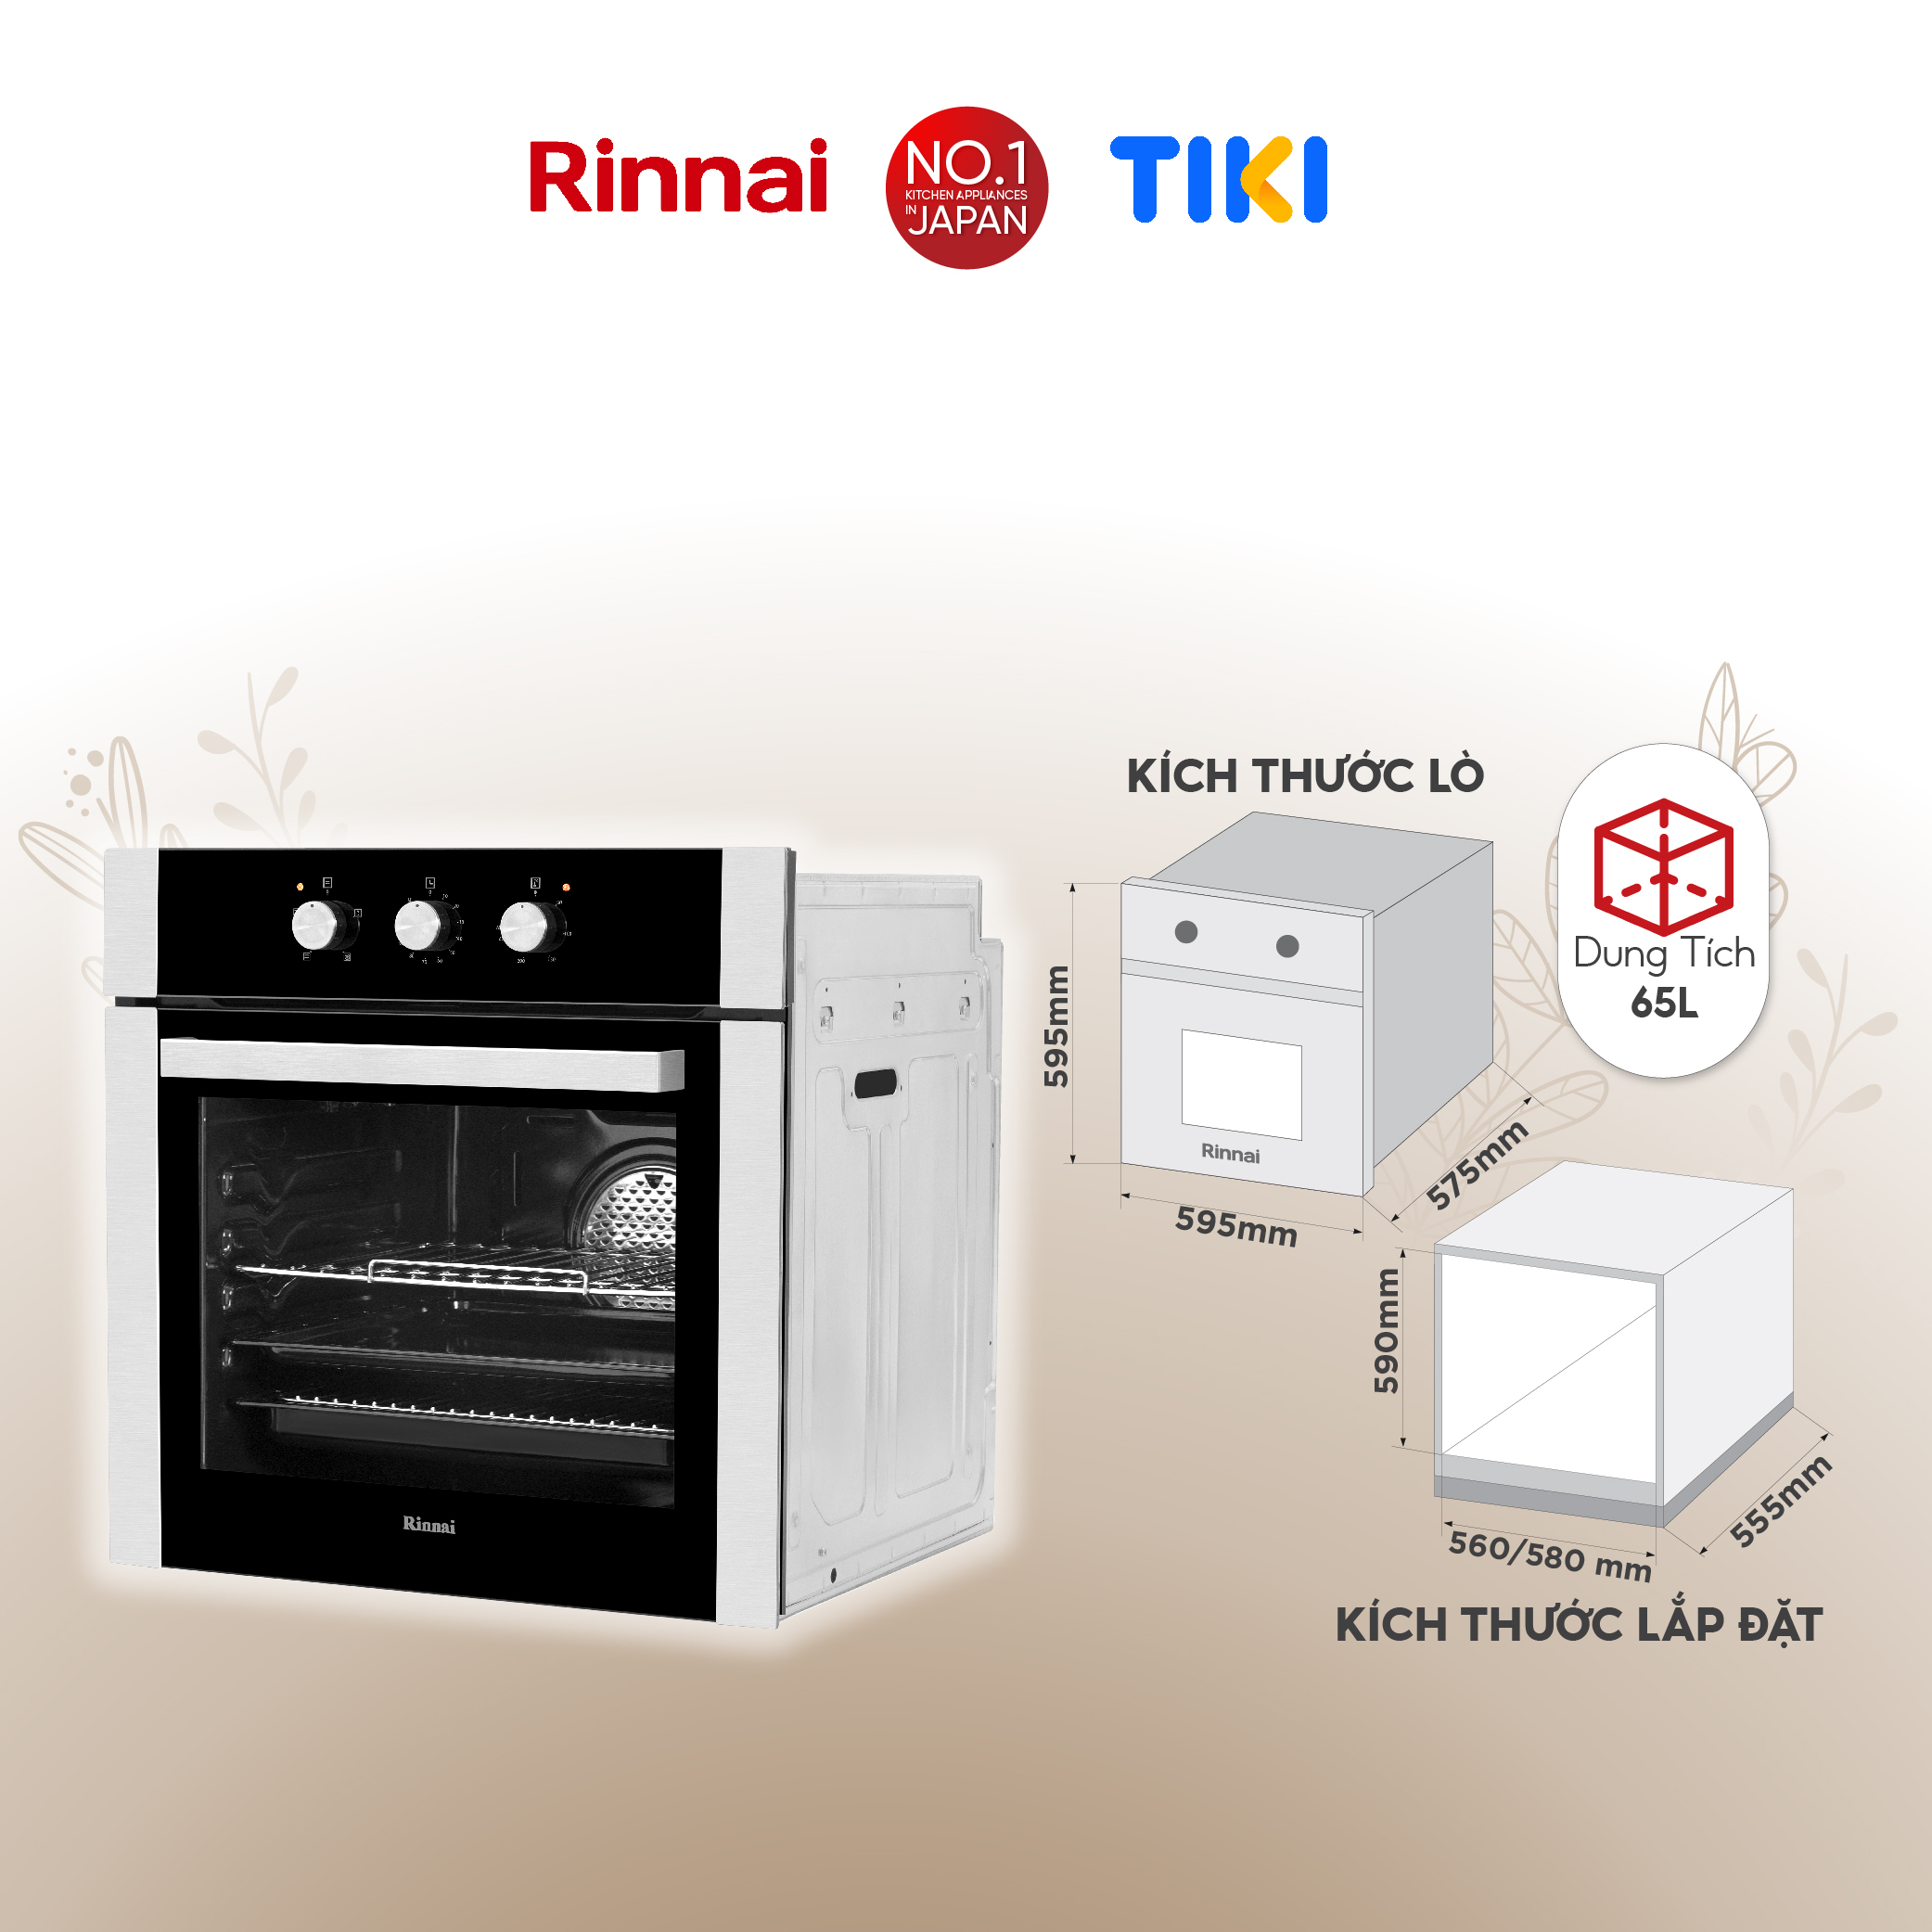 Lò nướng điện âm tủ Rinnai RO-E6104MA-EB dung tích 65L 2300W - Hàng chính hãng.